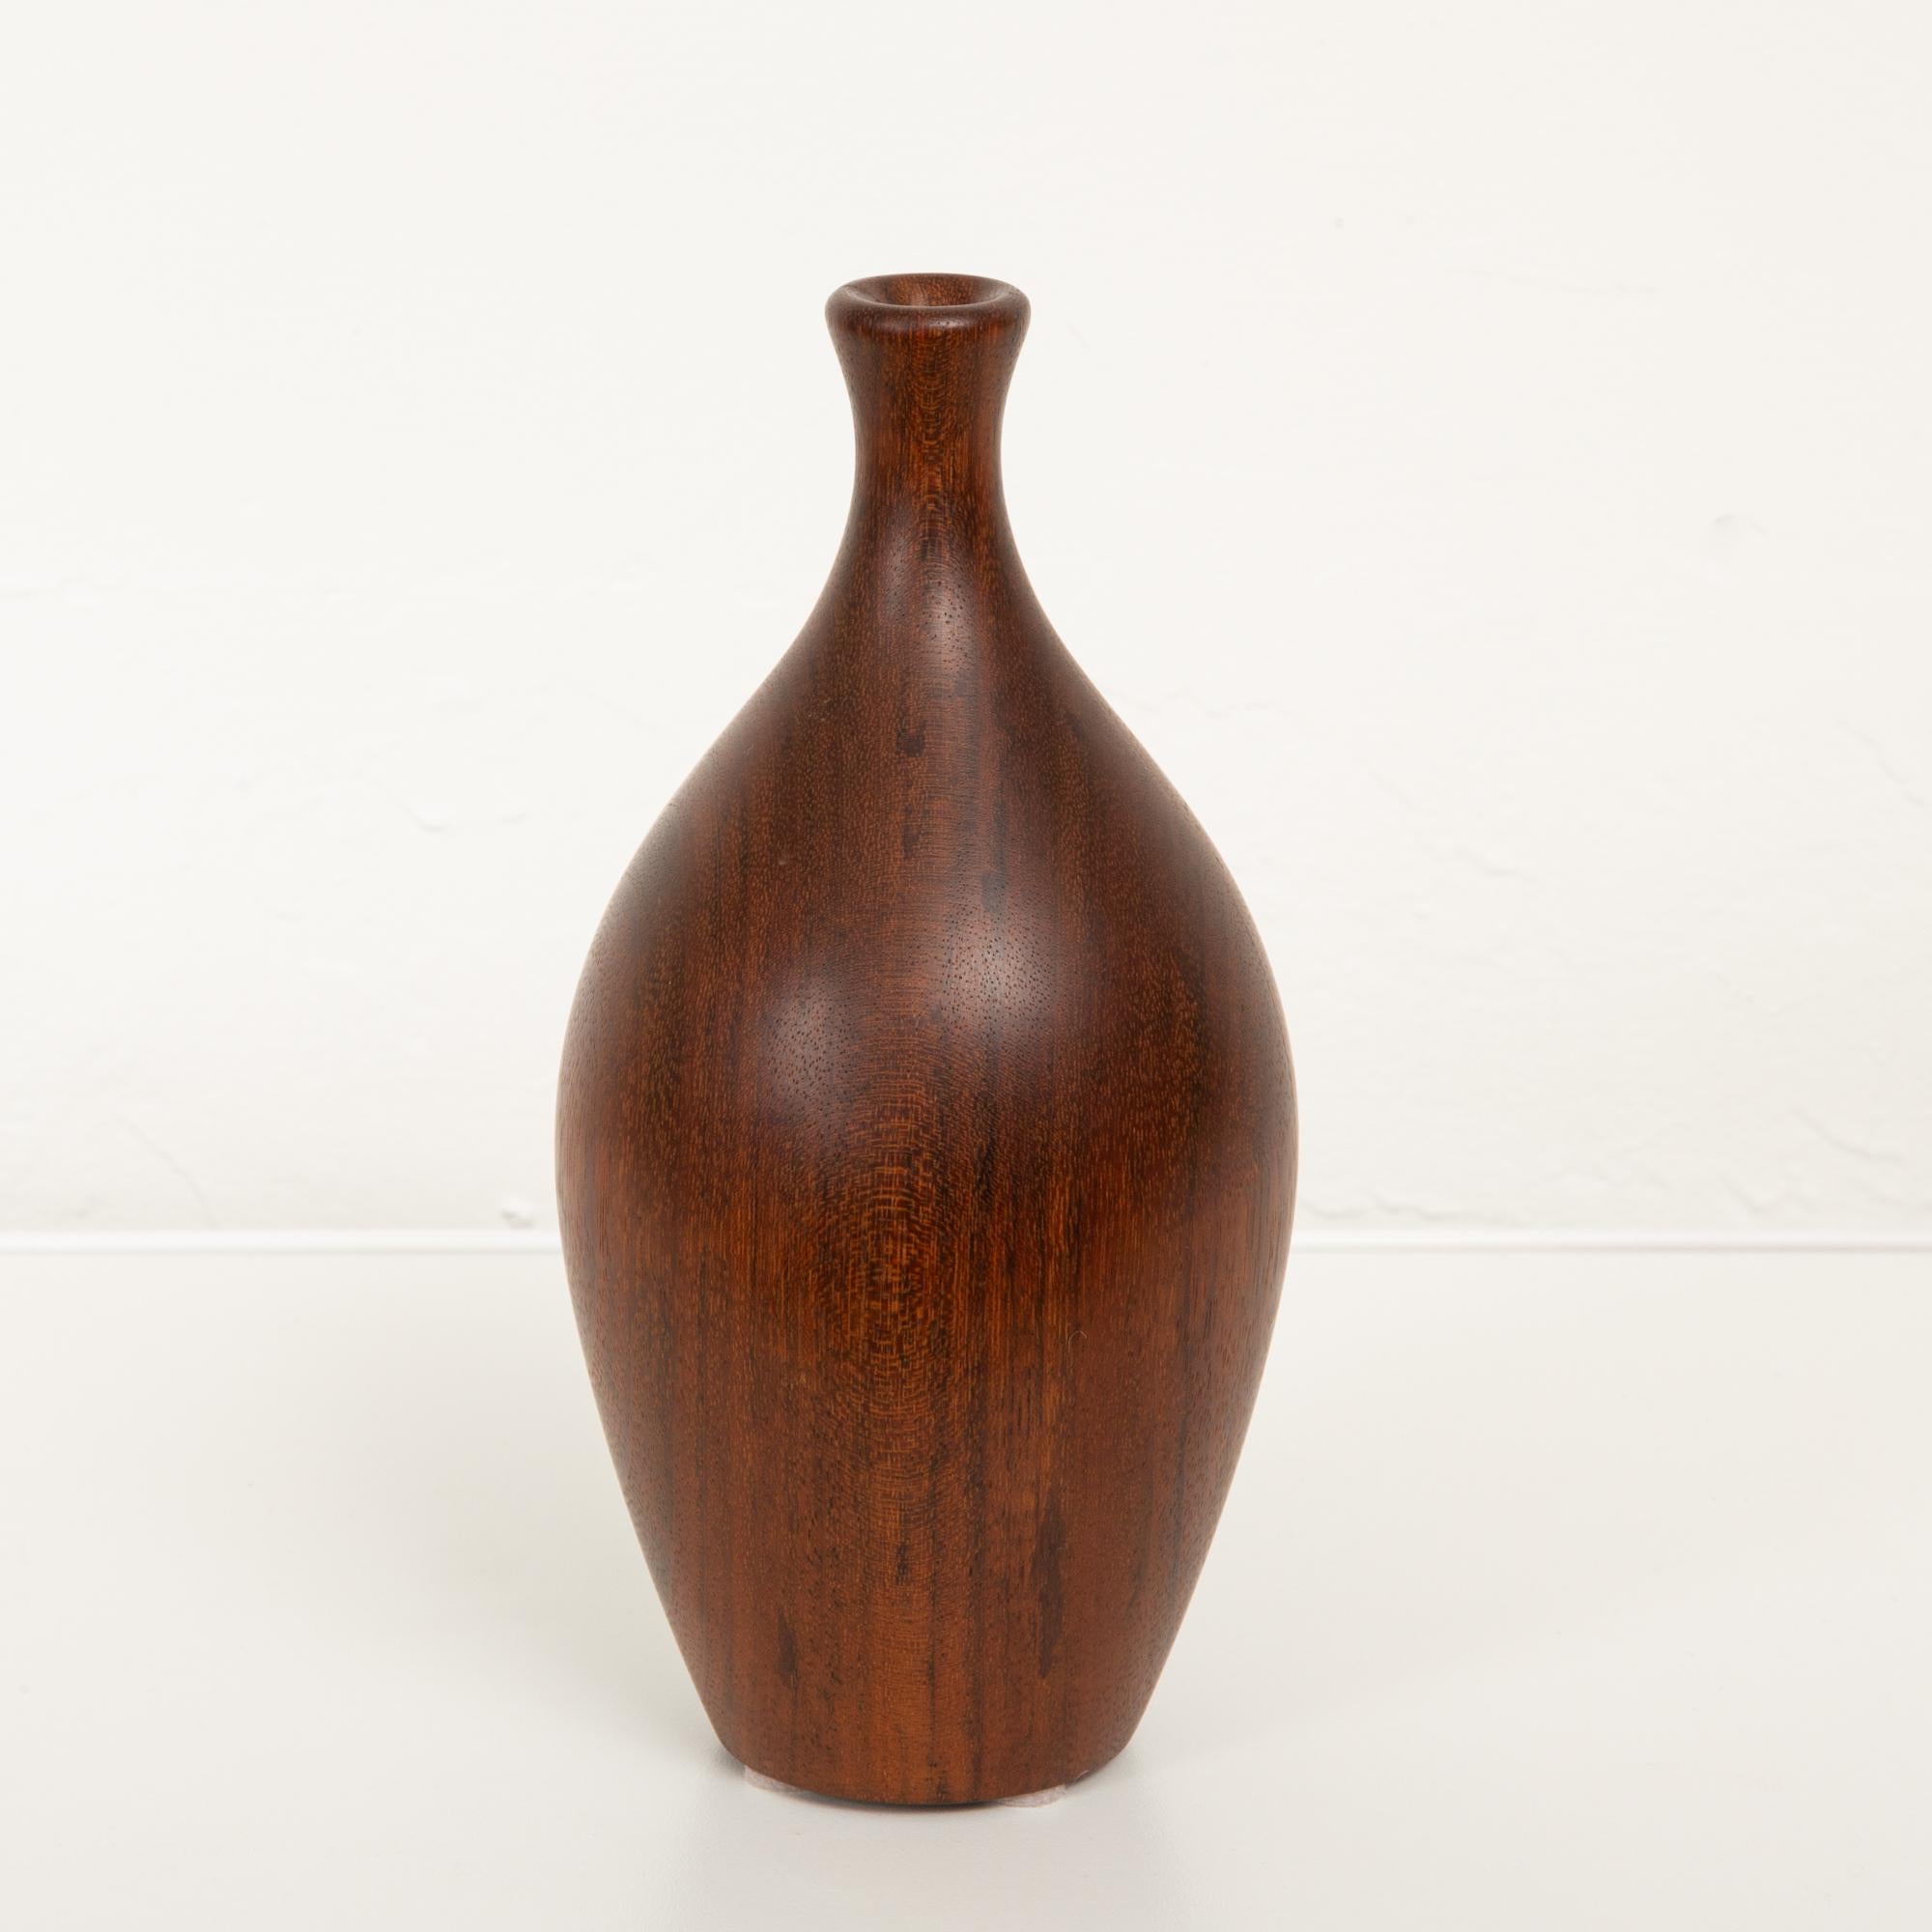 American Turned Wood Bud Vase